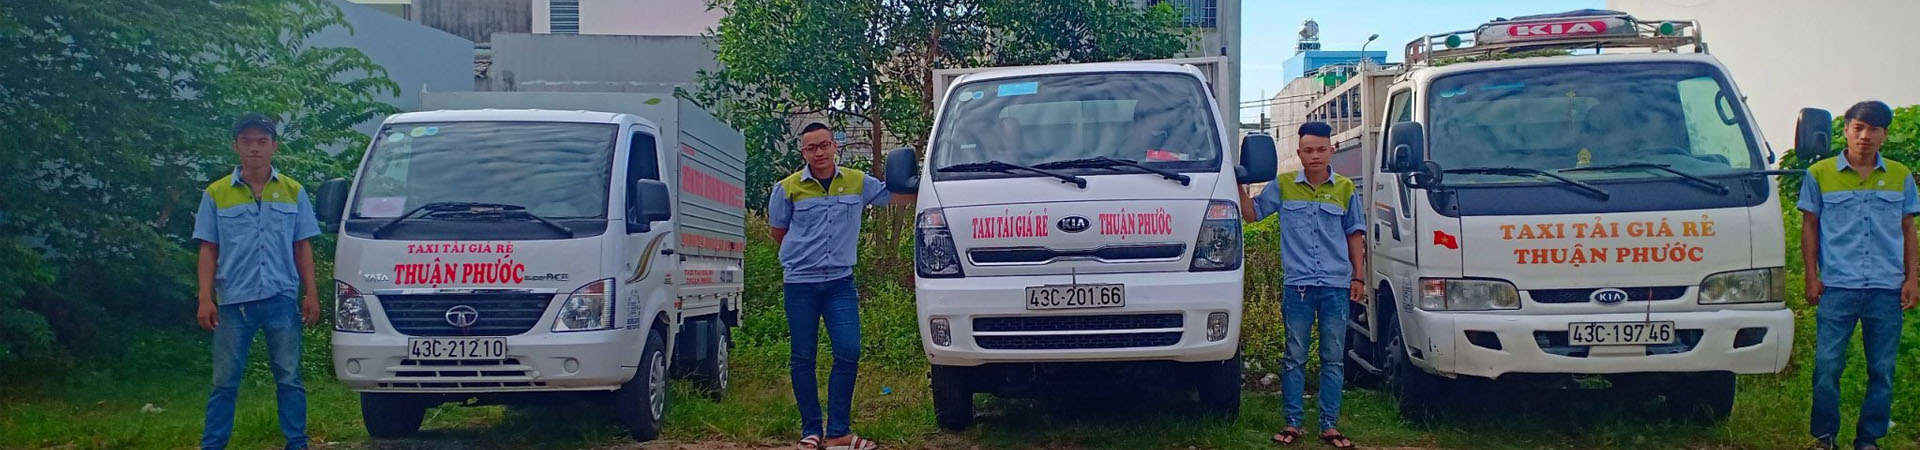 Taxi Tải Thuận Phước